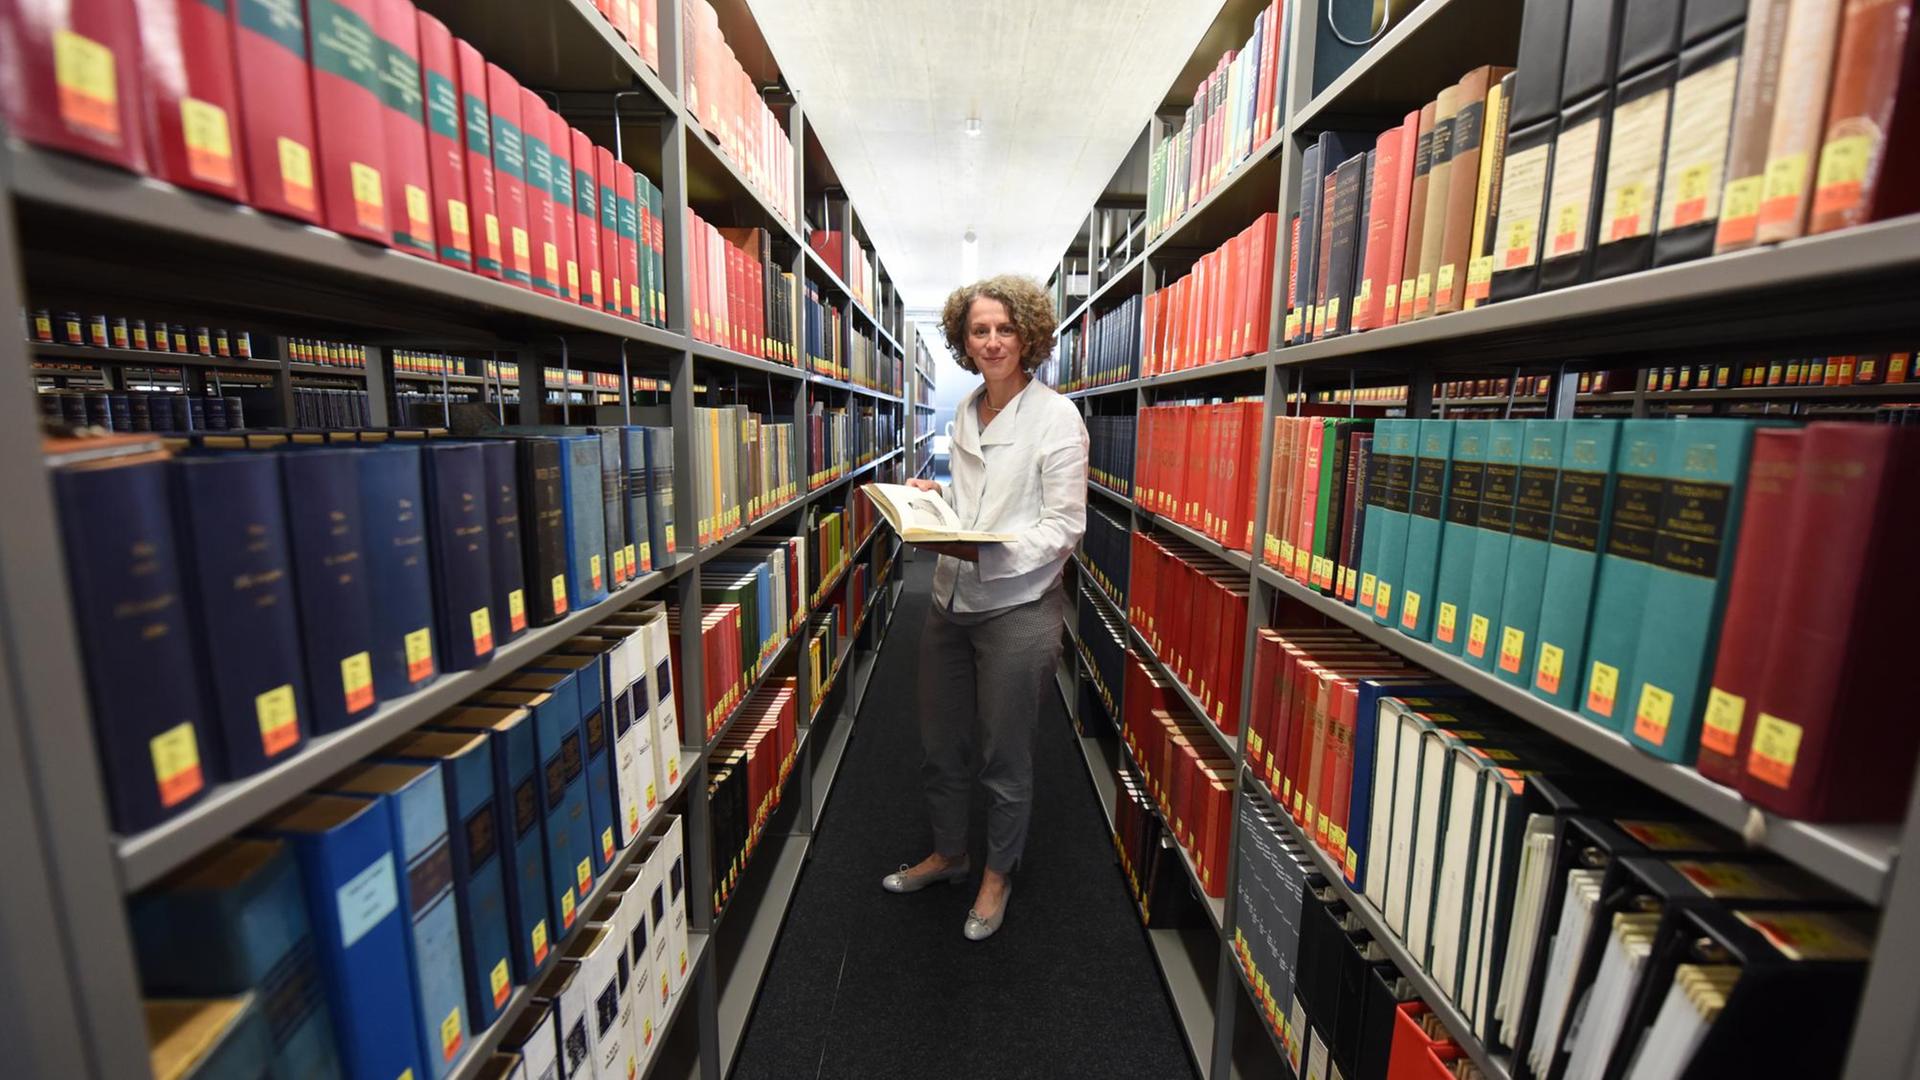 Bibliotheksdirektorin Antje Kellersohn posiert zwischen Bücherregalen in der Universitätsbibliothek